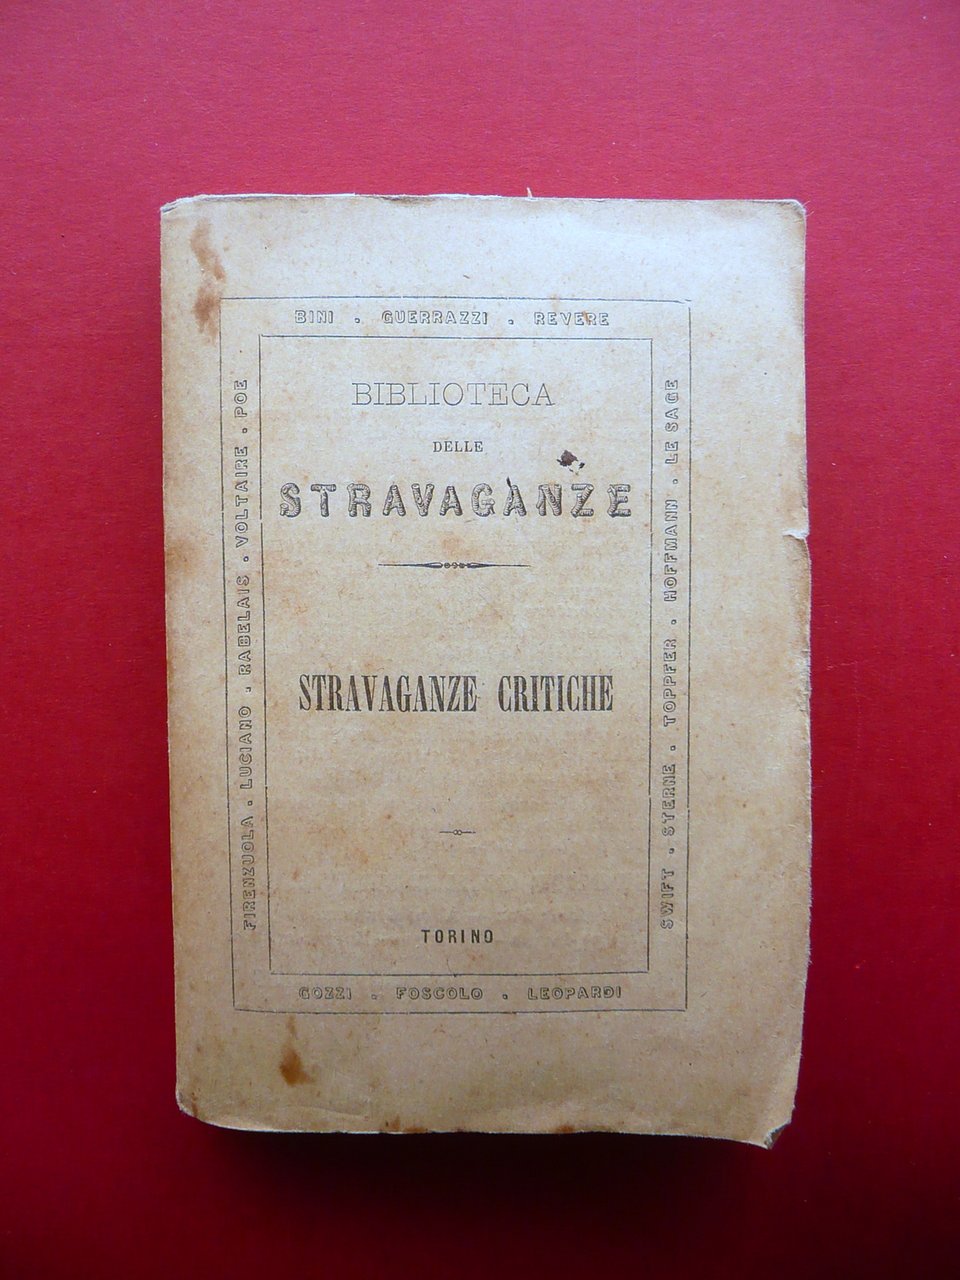 Stravaganze Critiche Luciano Voltaire Gozzi Leopardi Eredi Botta Torino 1858